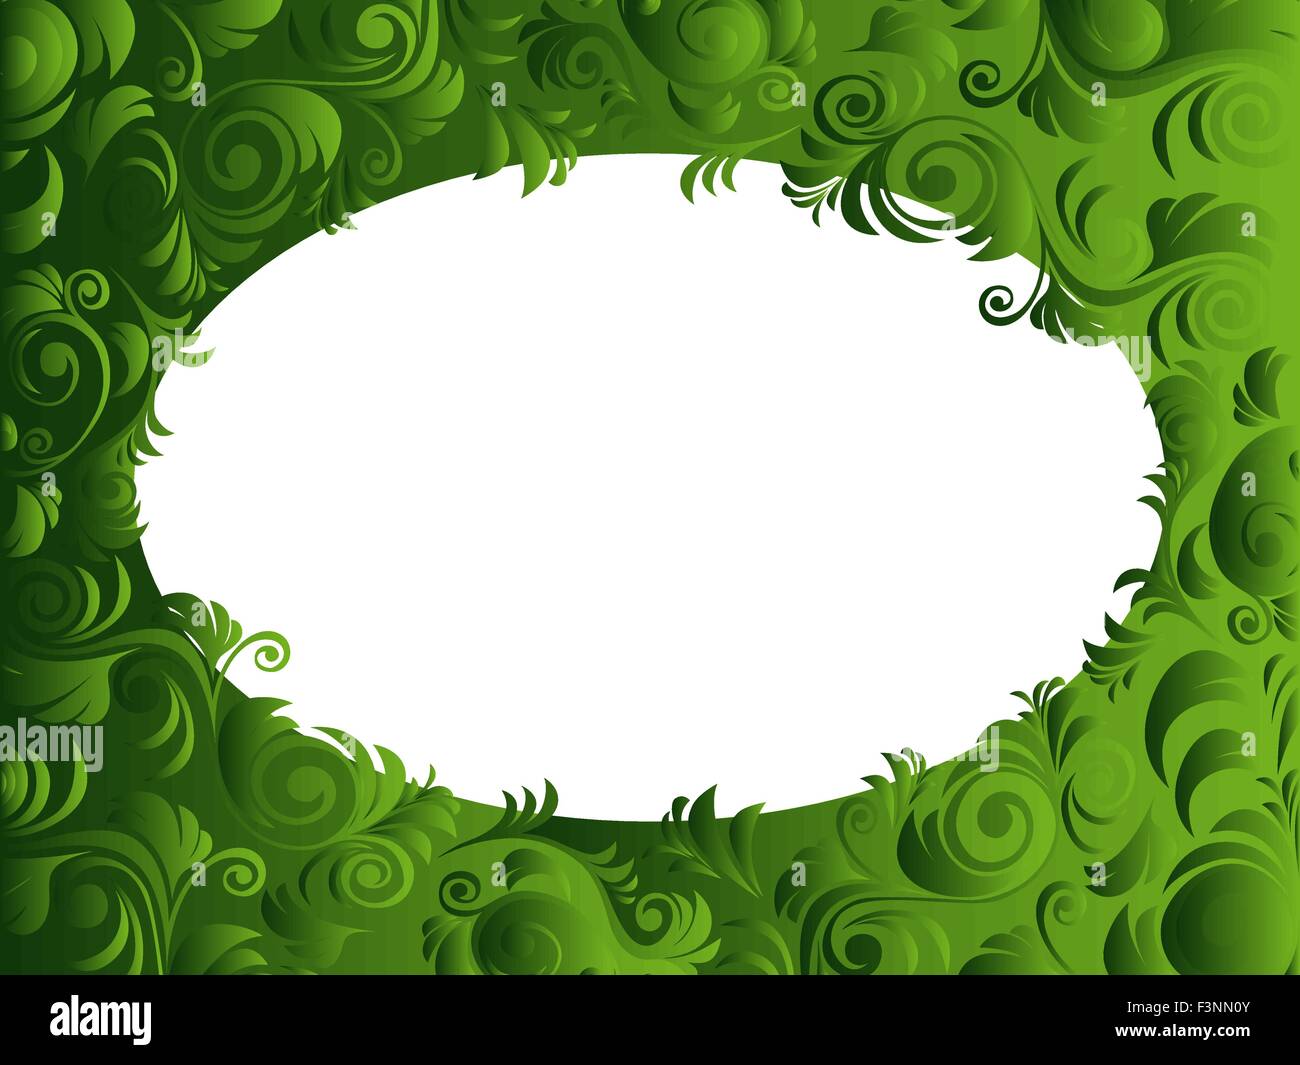 La structure horizontale ovale avec des éléments floraux dans des teintes vert, dessin à la main les images vectorielles Illustration de Vecteur